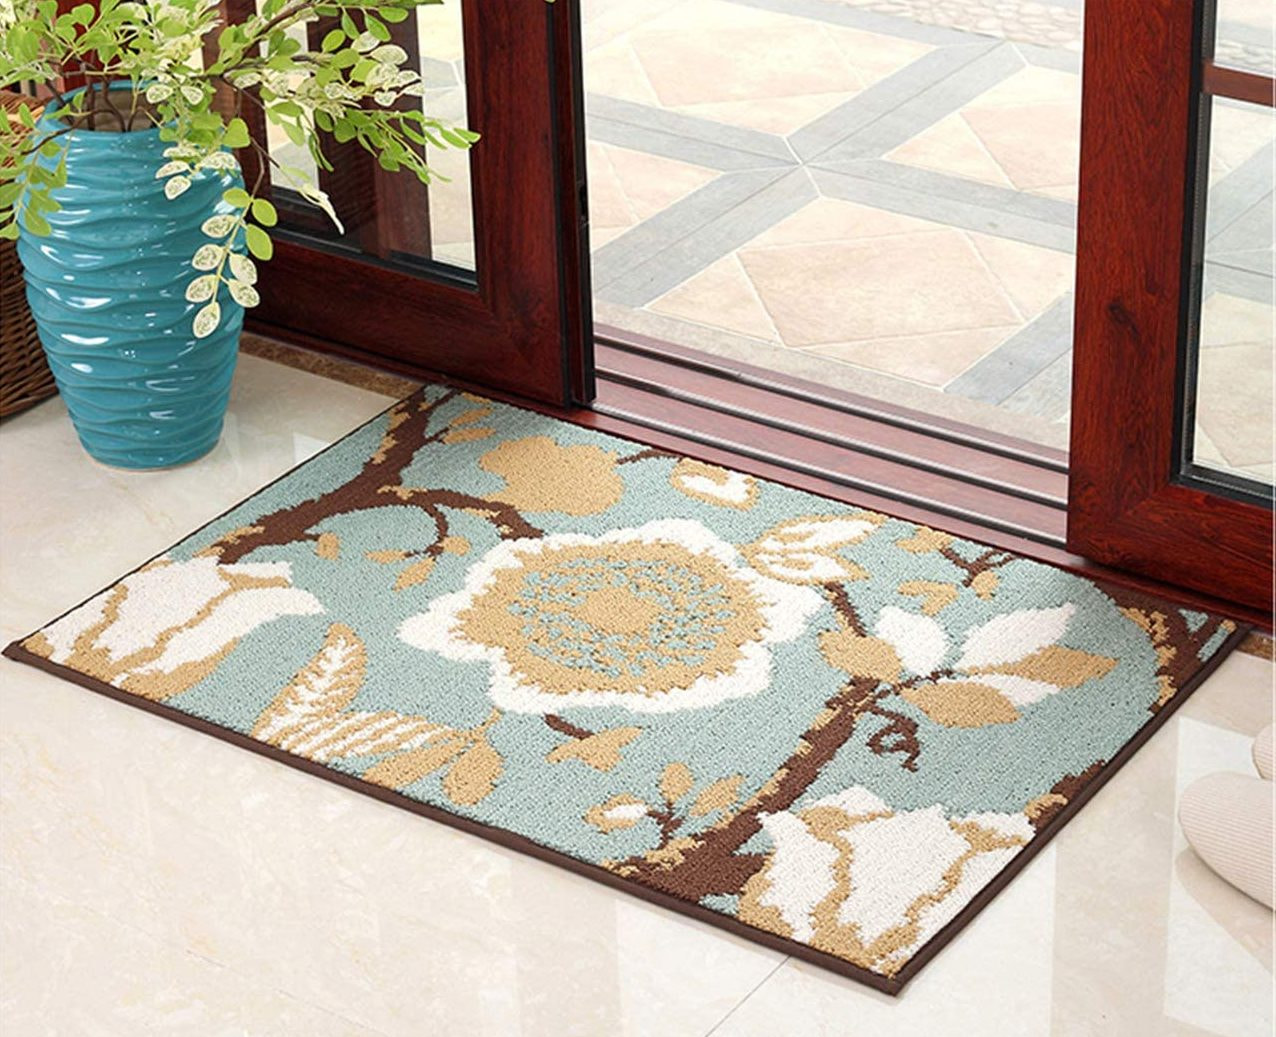 Đặt thảm trước cửa ra vào giúp giảm tiếng ồn từ bên ngoài